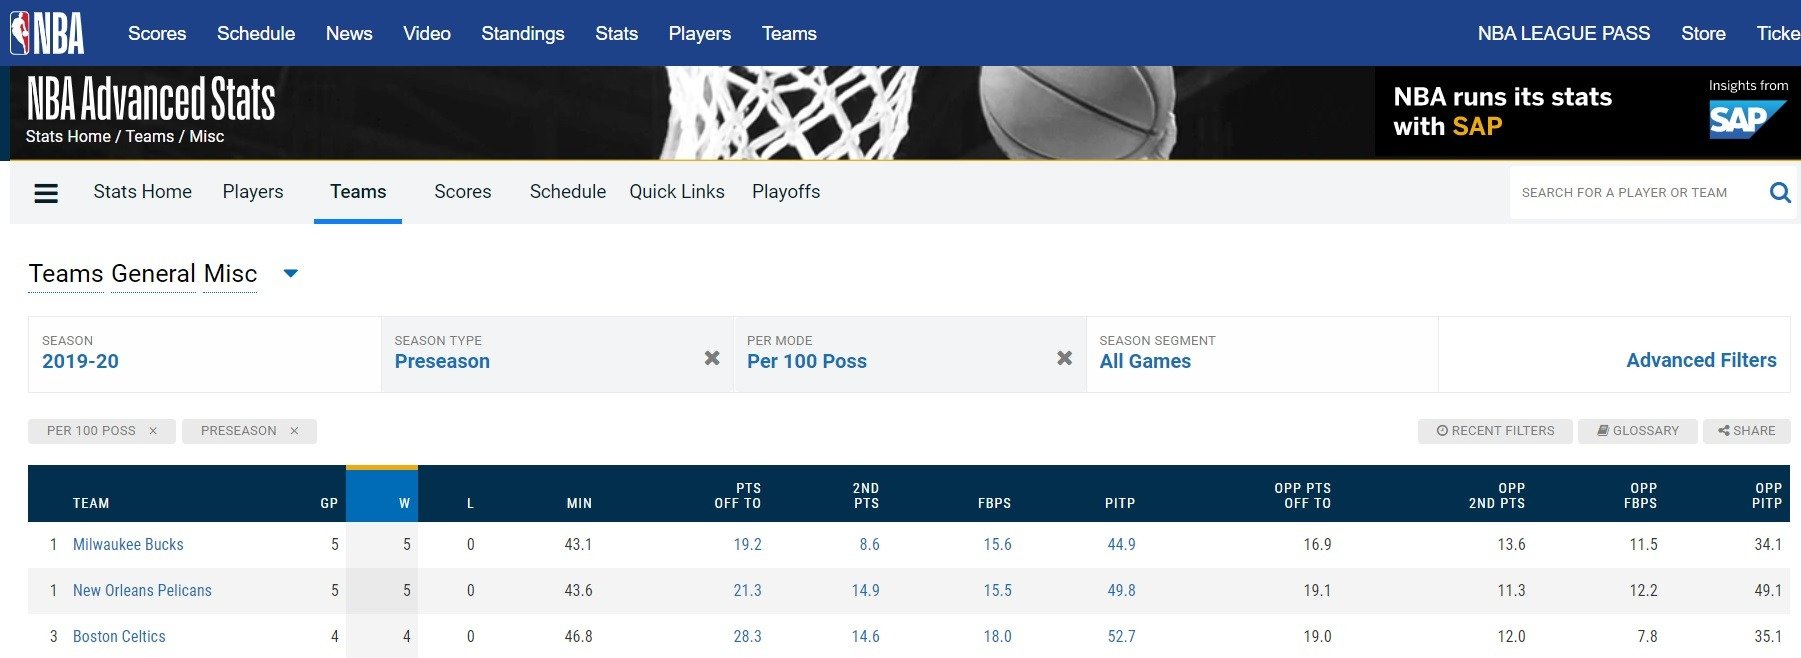 Misc статистика в НБА. Базовый набор для анализа